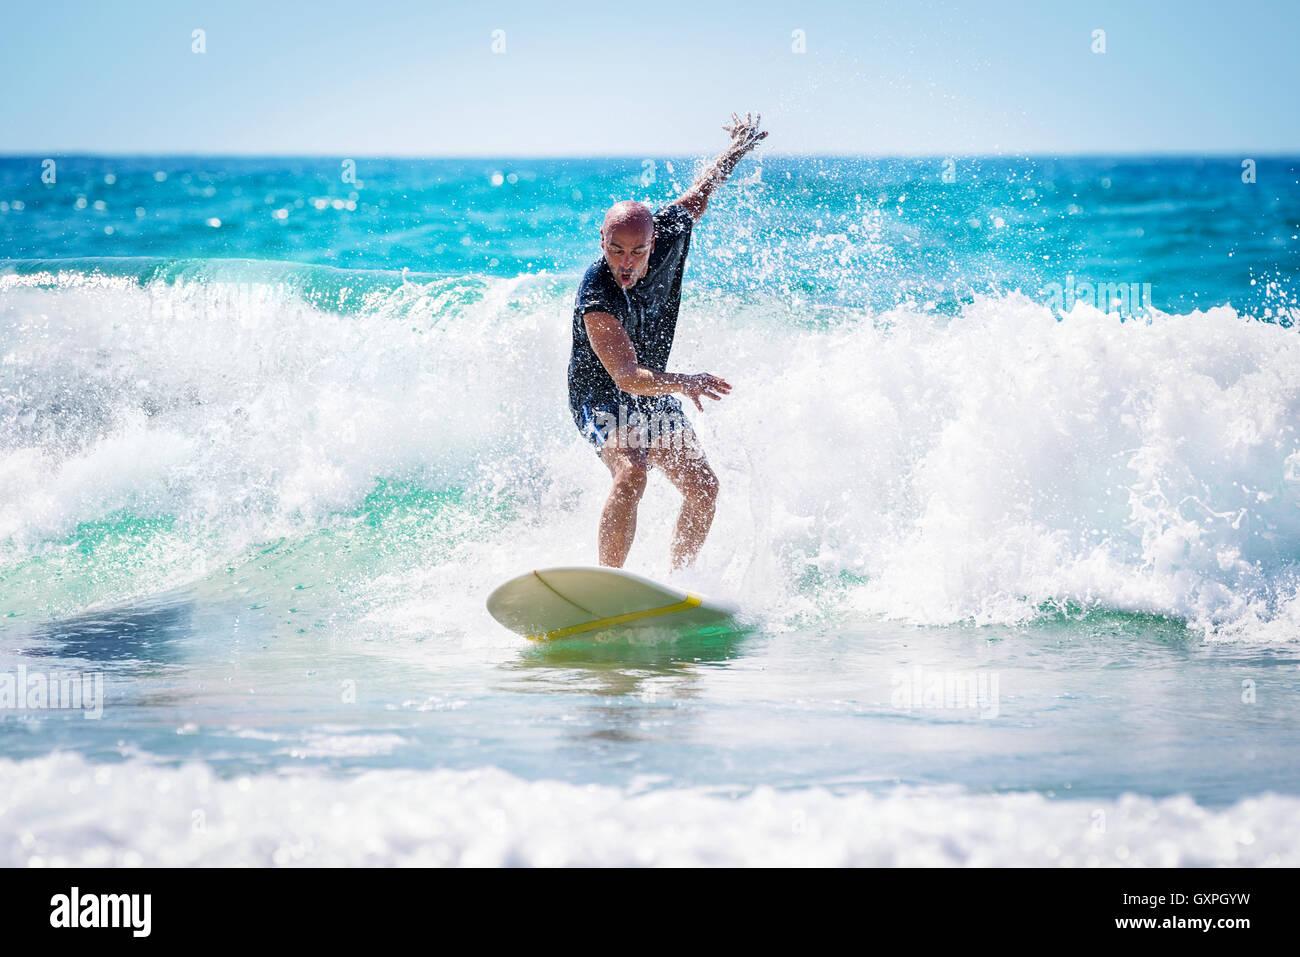 Surfer disfrutando de las olas altas en un brillante día soleado, un estilo de vida activo, extreme deportes acuáticos, actividades de verano Foto de stock